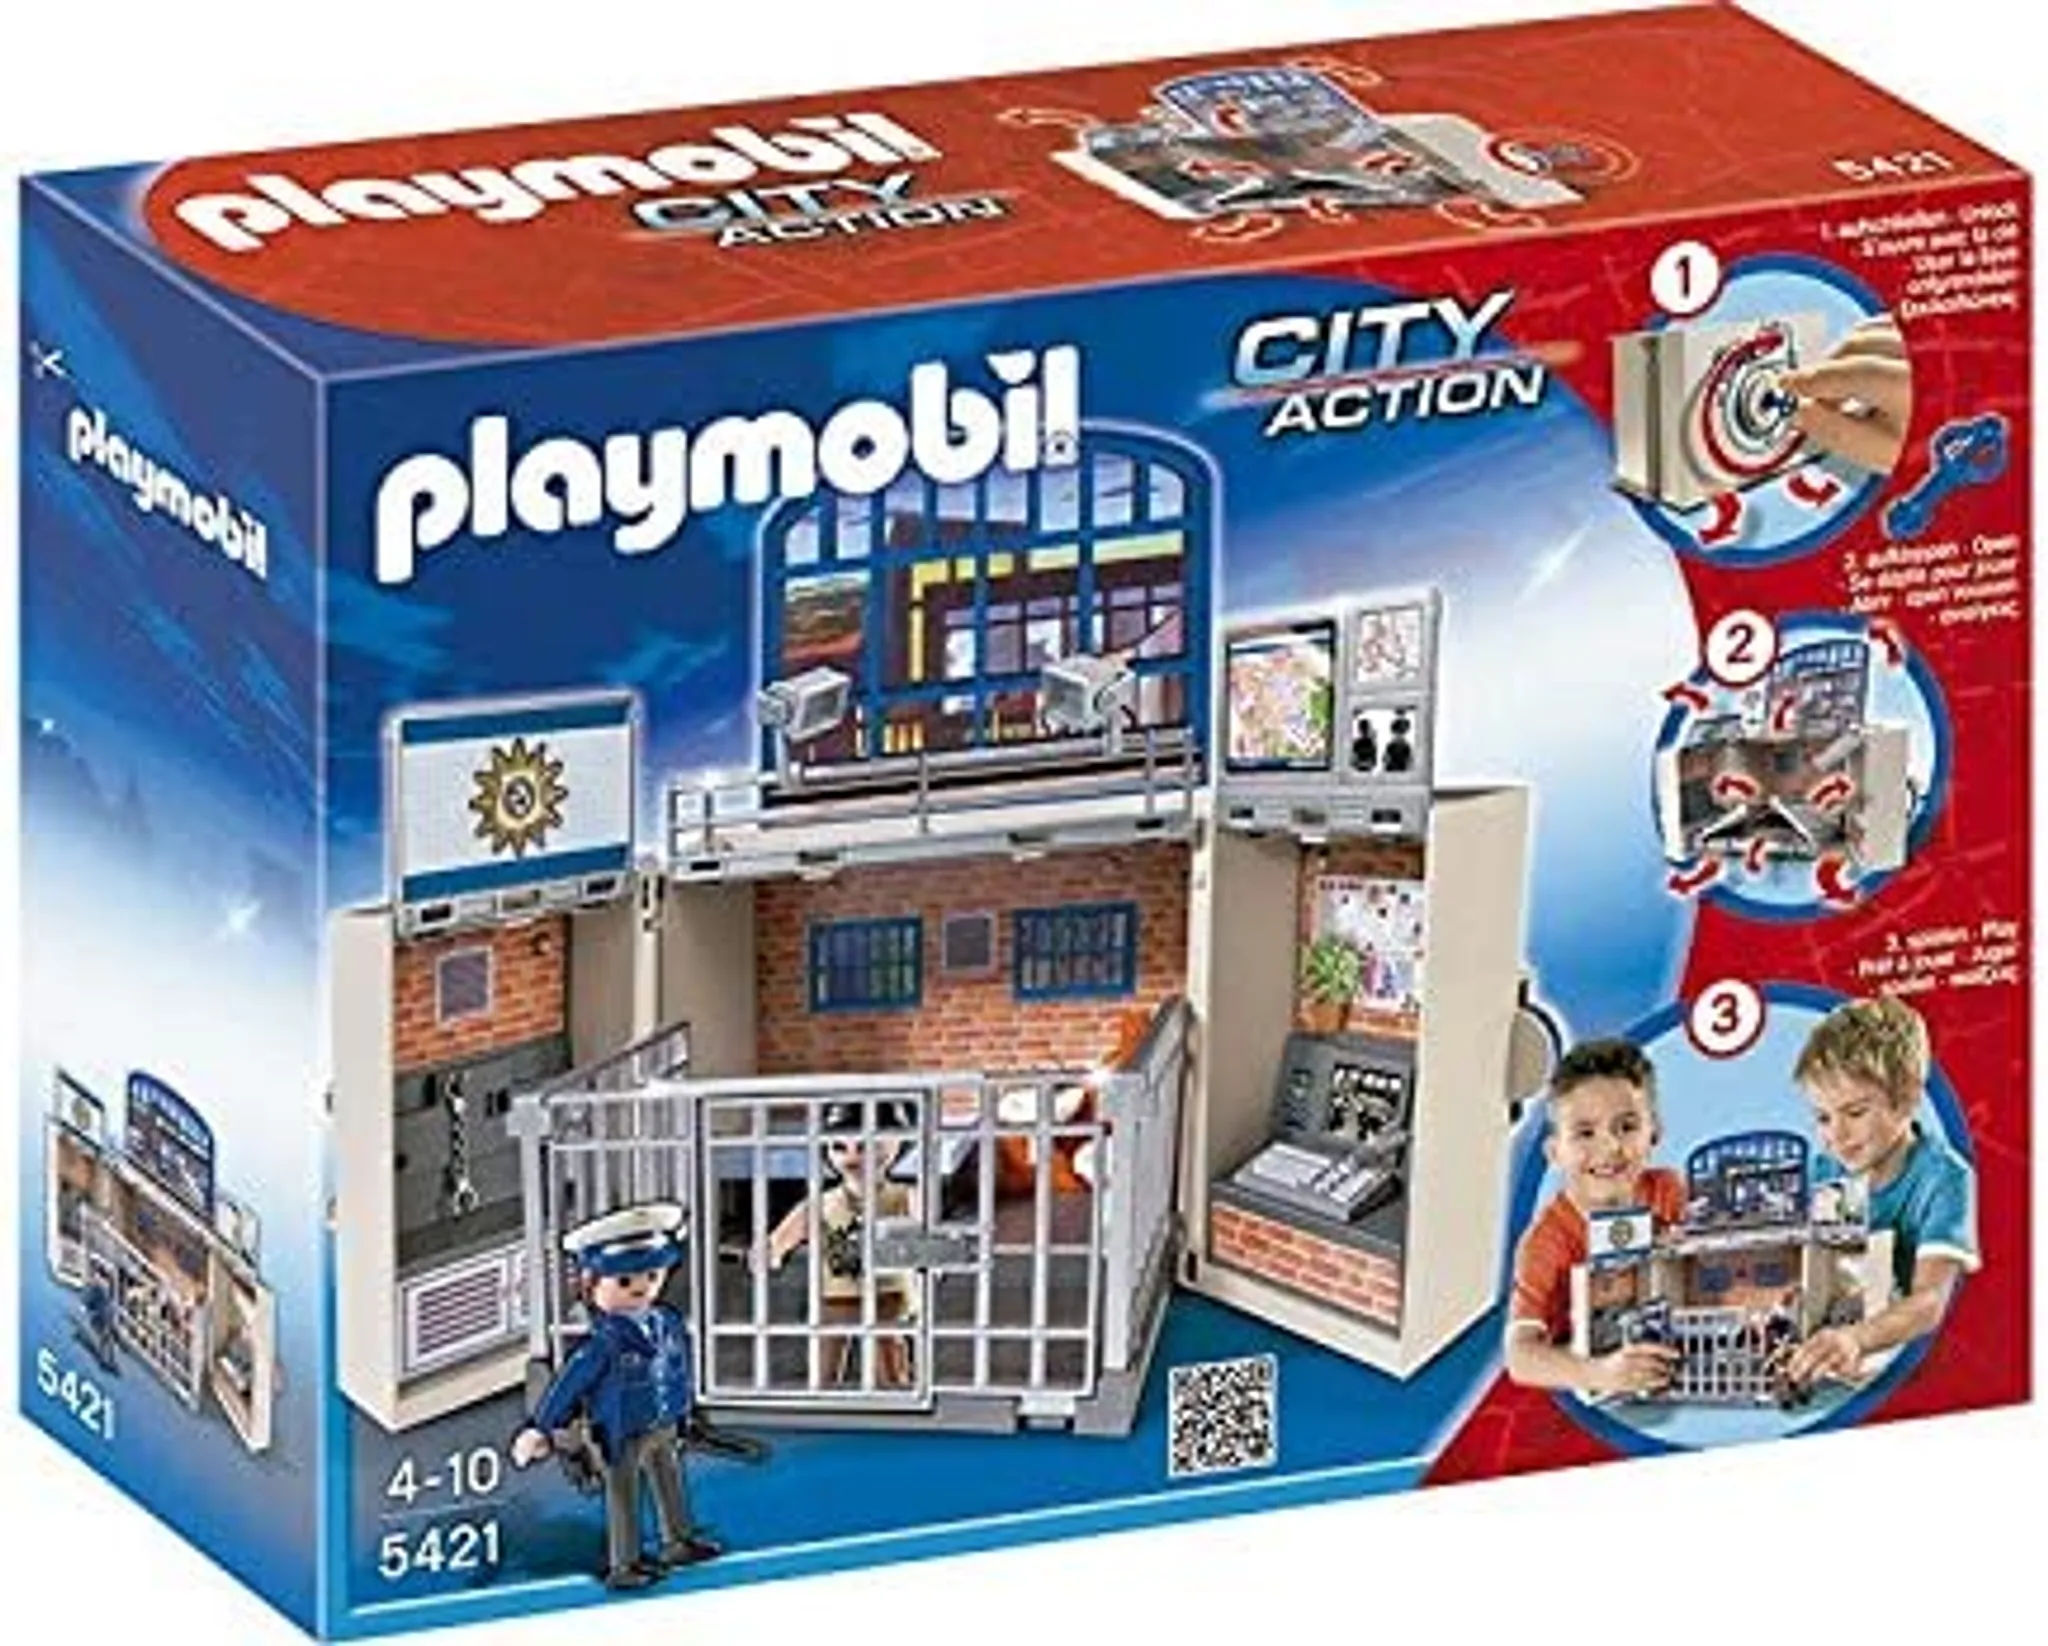 Playmobil CITY Action Polizei Station 5421 - 34 x 24 cm - Aufklapp Spielbox mit 63 Teilen